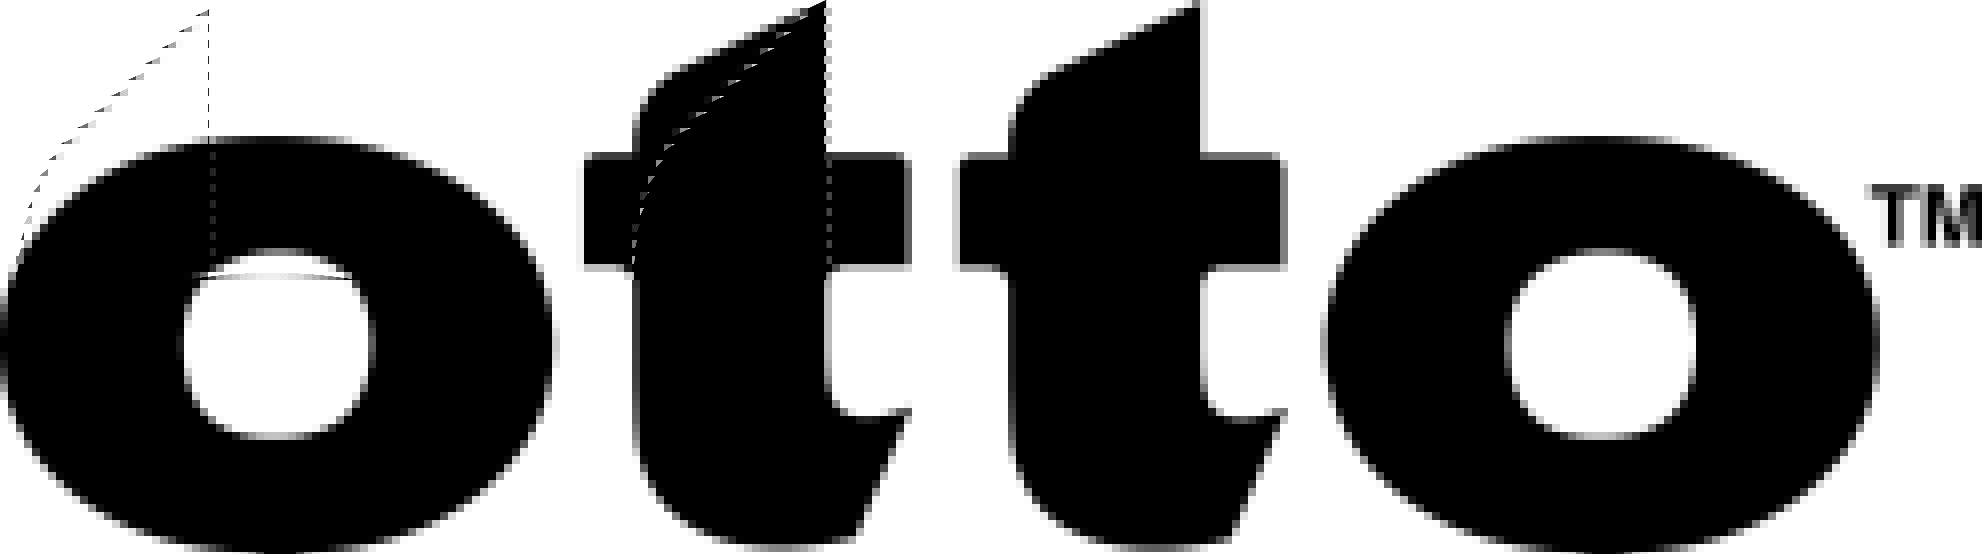 Otto Logo - HBC otto Advance Inquiry